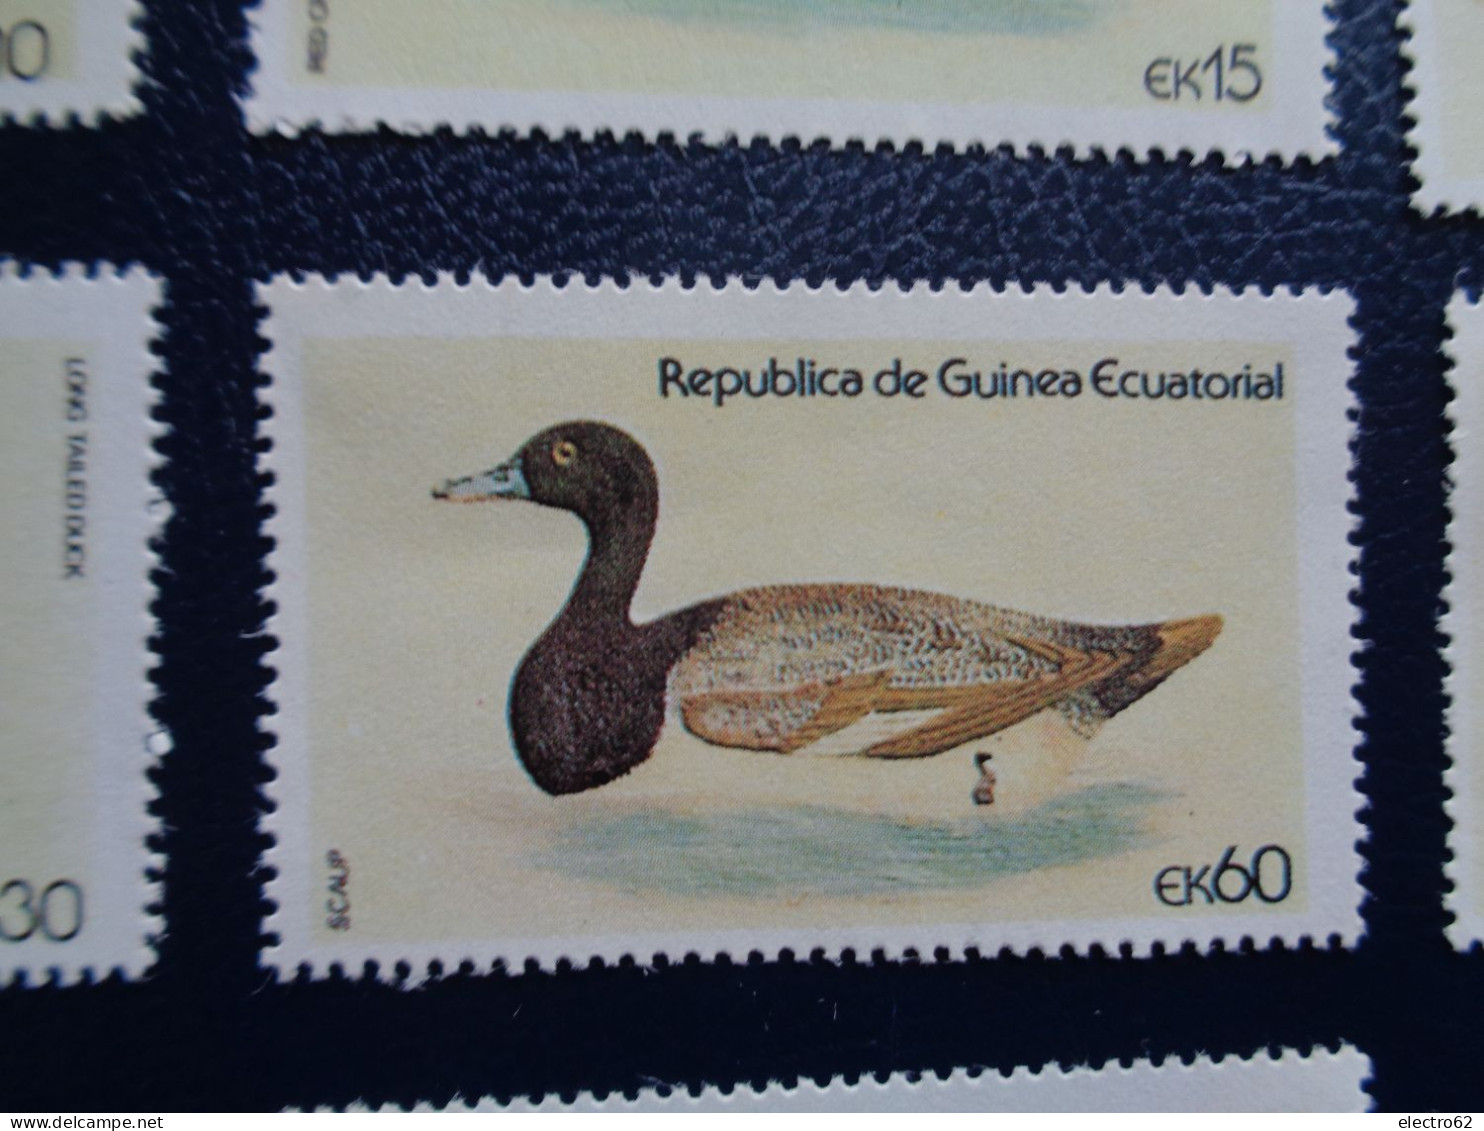 Guinée Equatoriale canard duck ente pato anatra eend giappone and Guinea Ecuatorial